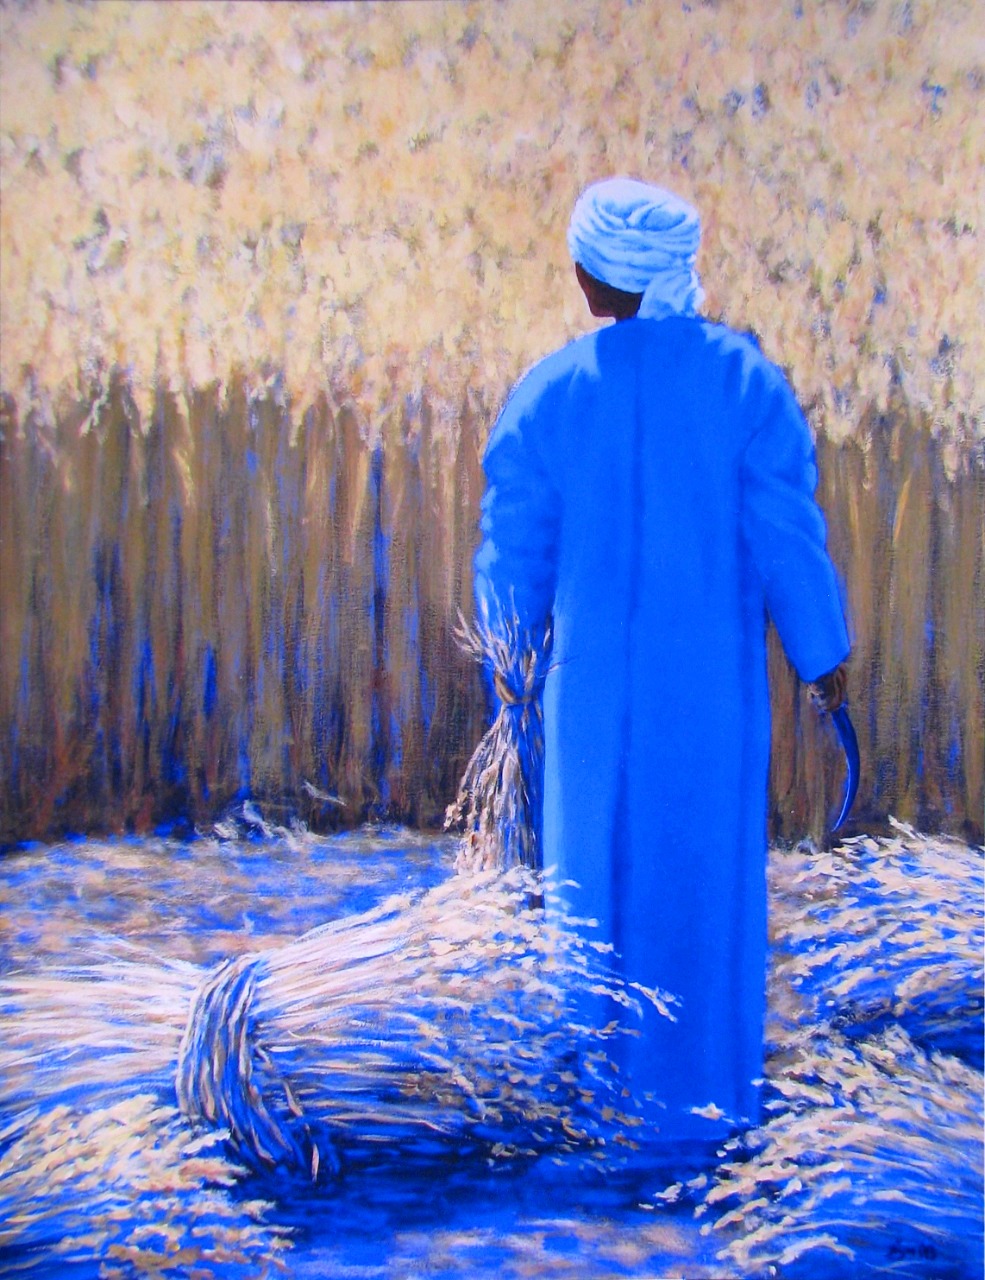 لوحة زراعة القمح للفنان براين فلين